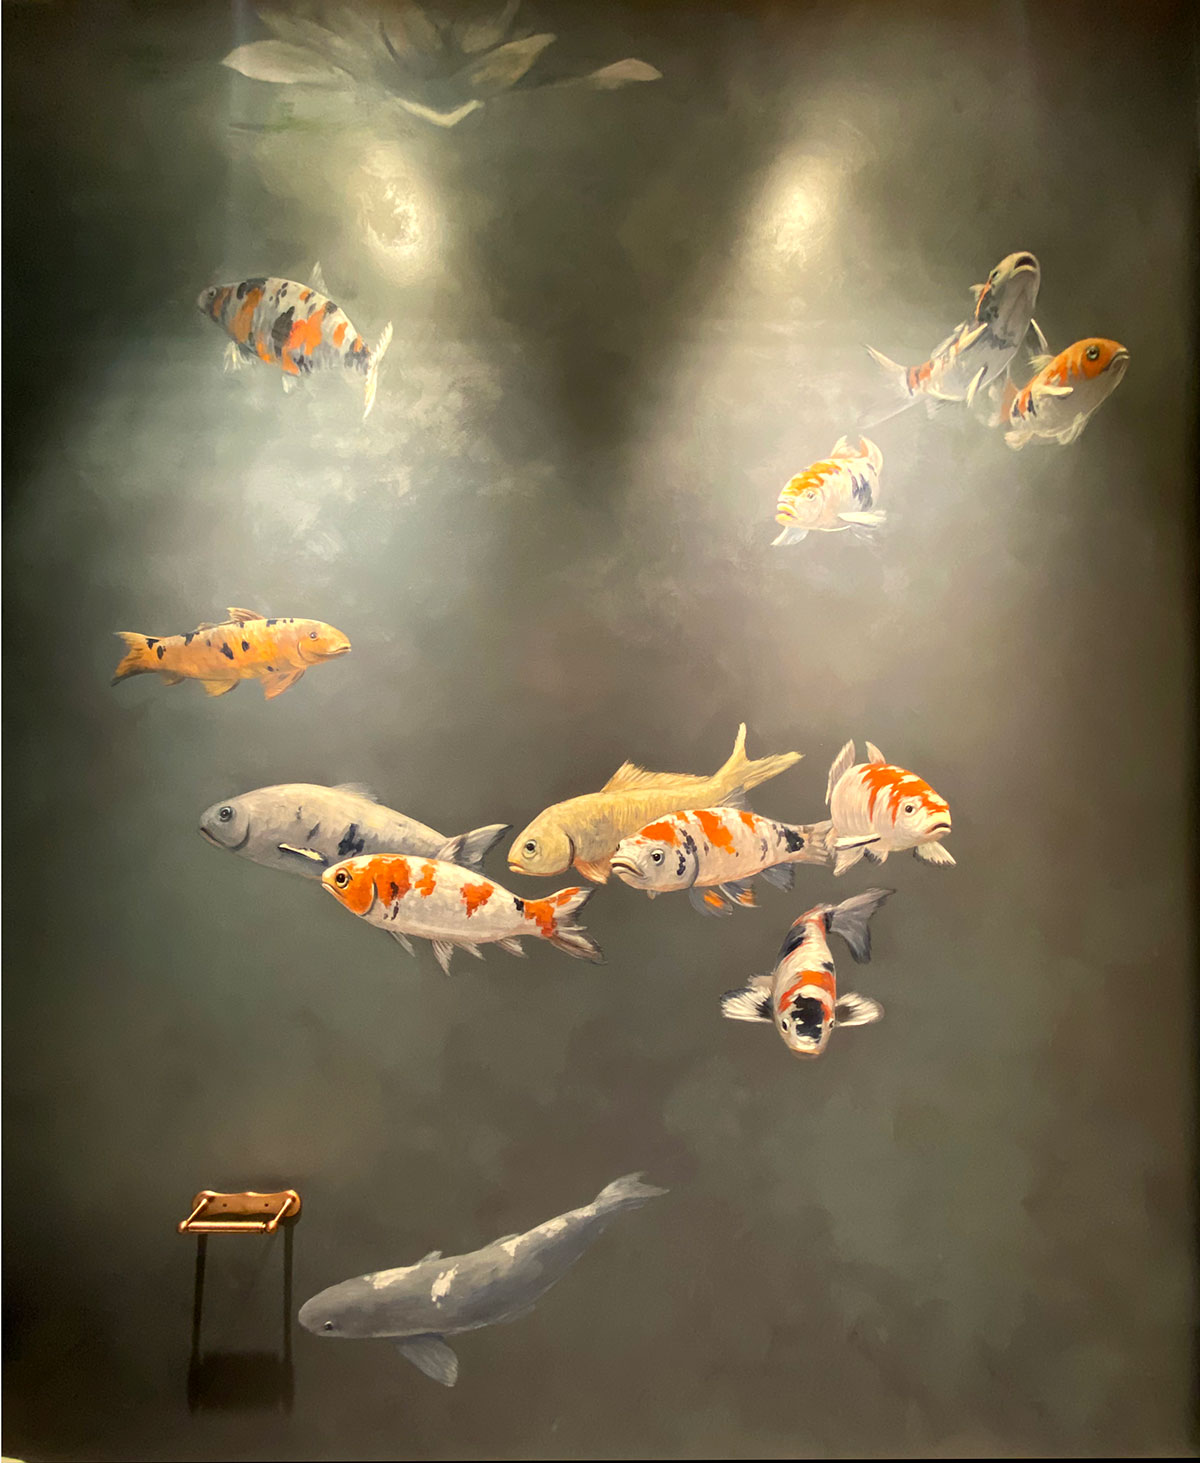 Koi Mural with Handpainted Fish